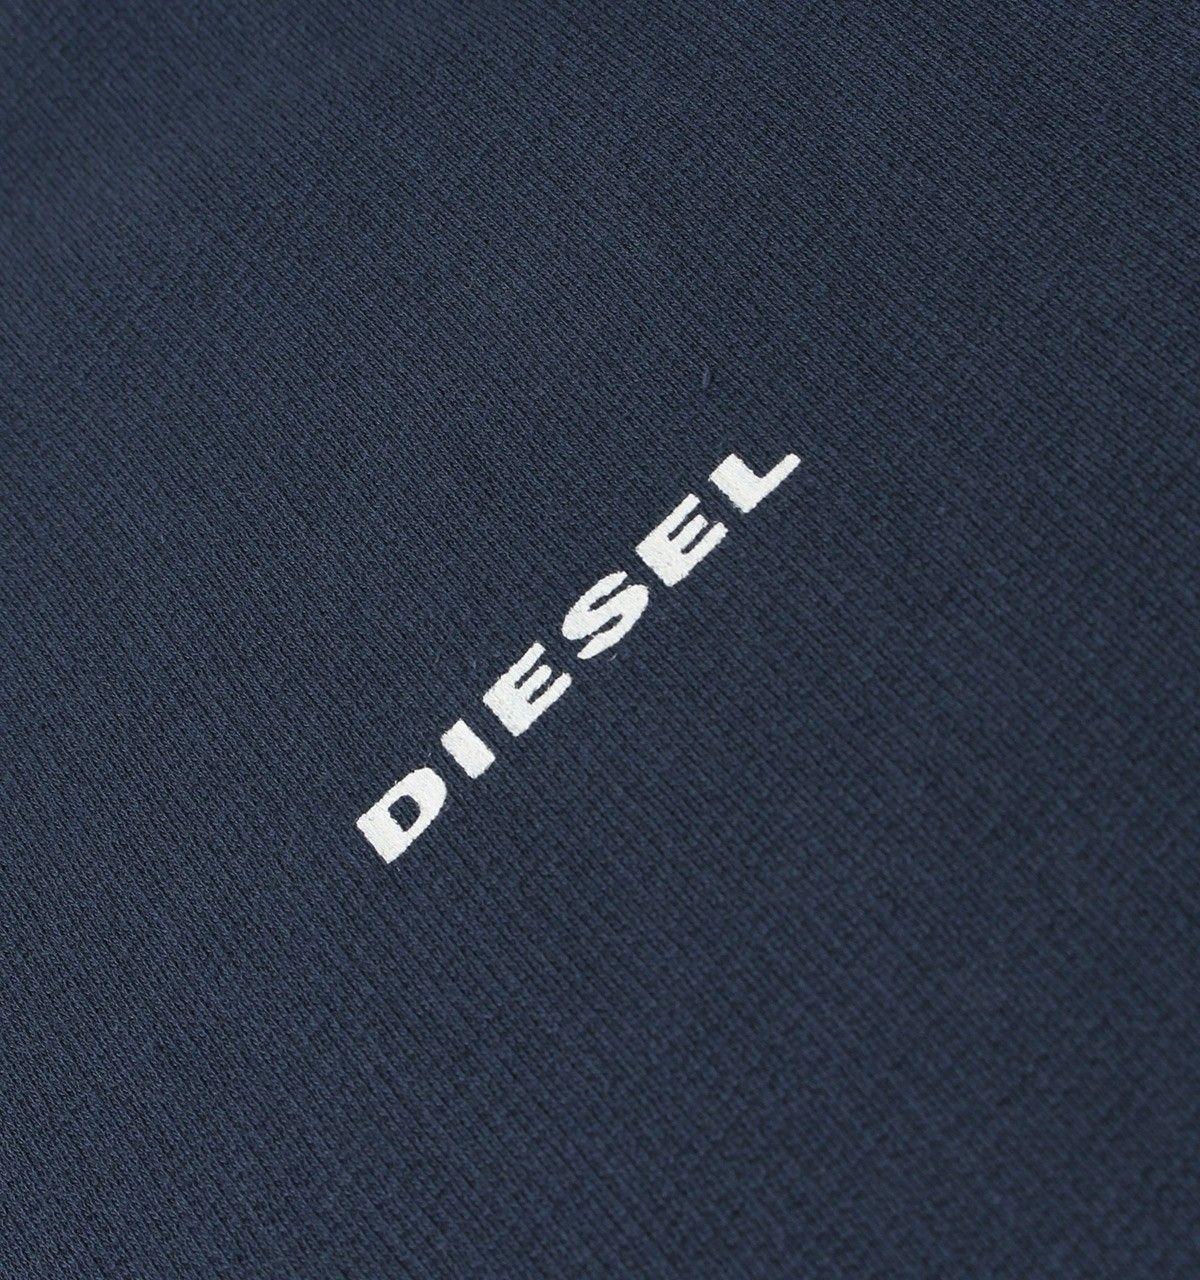 Camo Diesel Logo - Diesel Casey Blue Digital Camo Sleeve Sweat